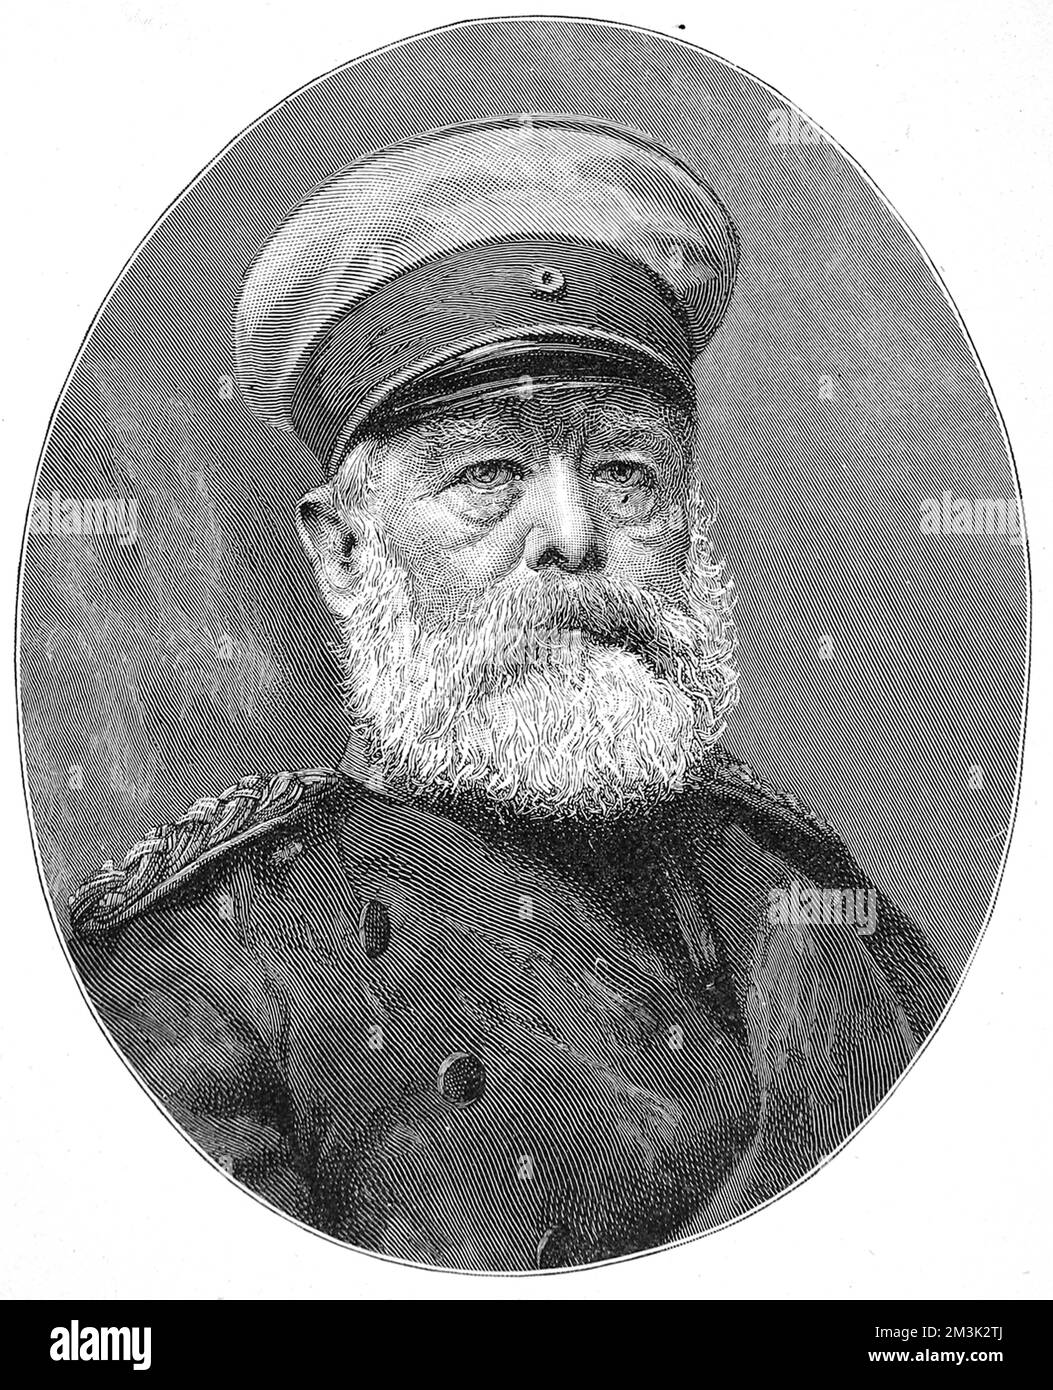 Prinz Otto Edward Leopold von Bismarck, Herzog von Lauenburg (1815-1898), der preußisch-deutsche Staatsmann und erster Kanzler des Deutschen Reiches. Stockfoto